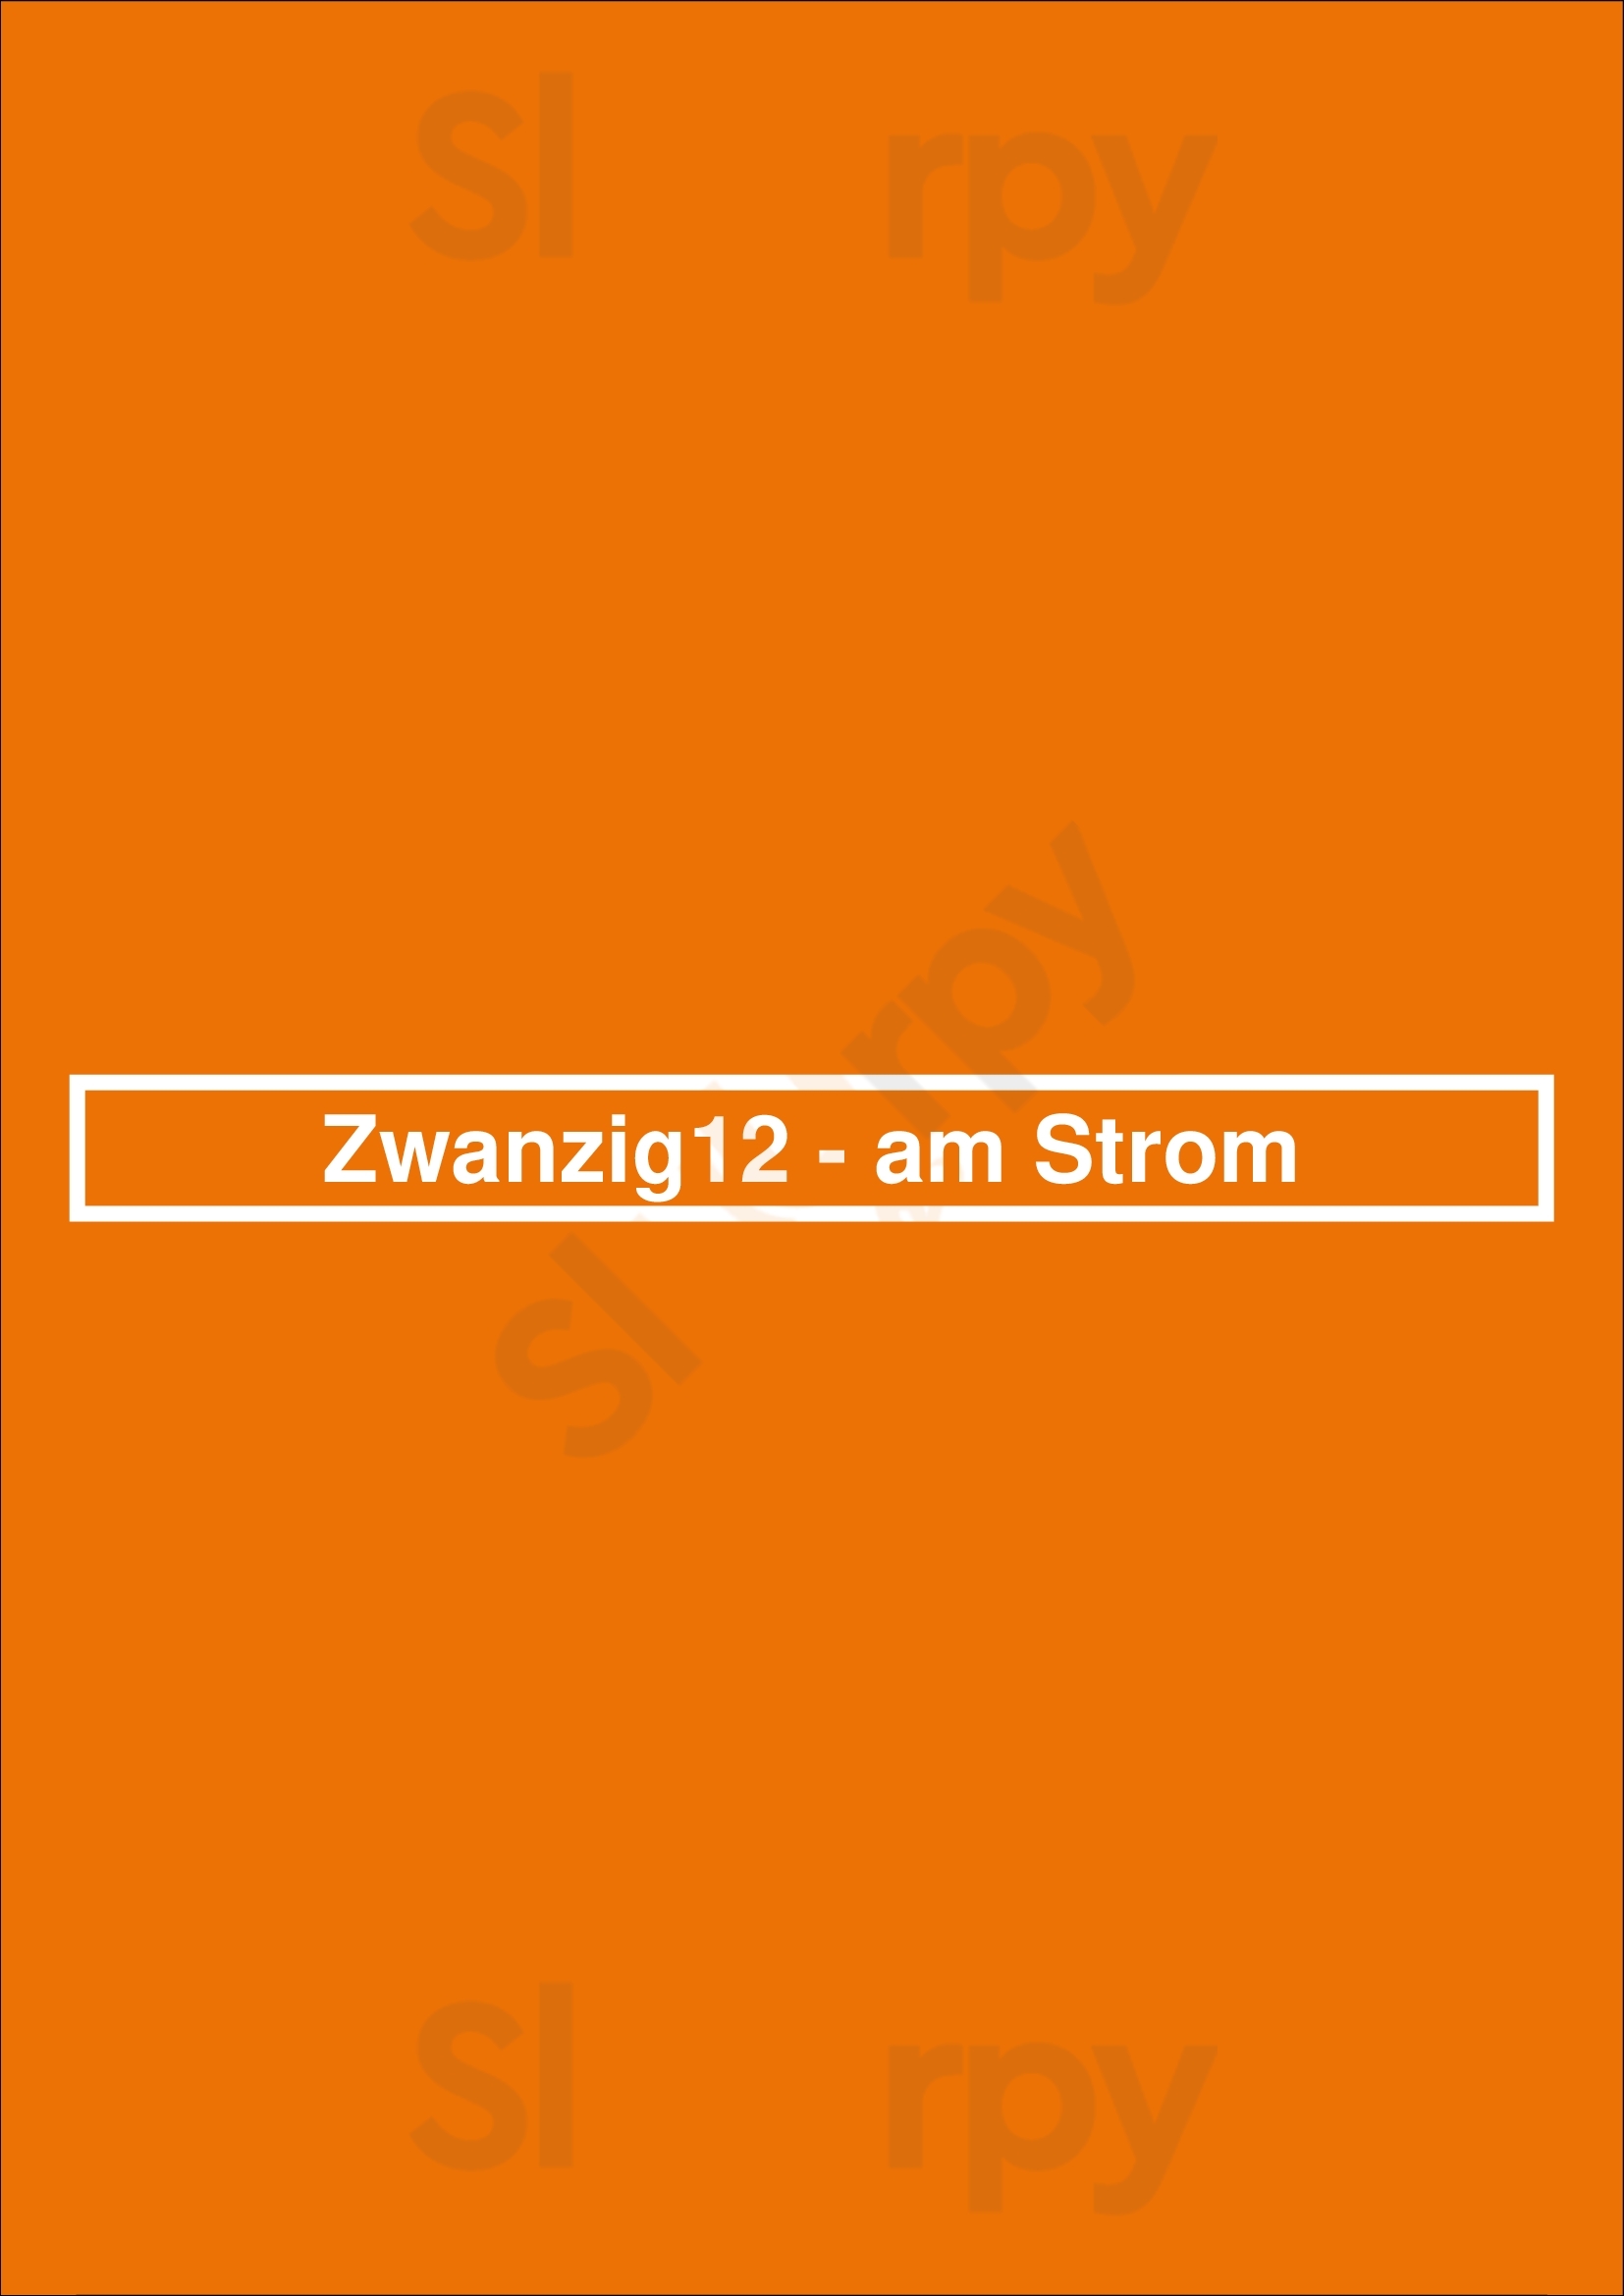 Zwanzig12 - Am Strom Warnemünde Menu - 1